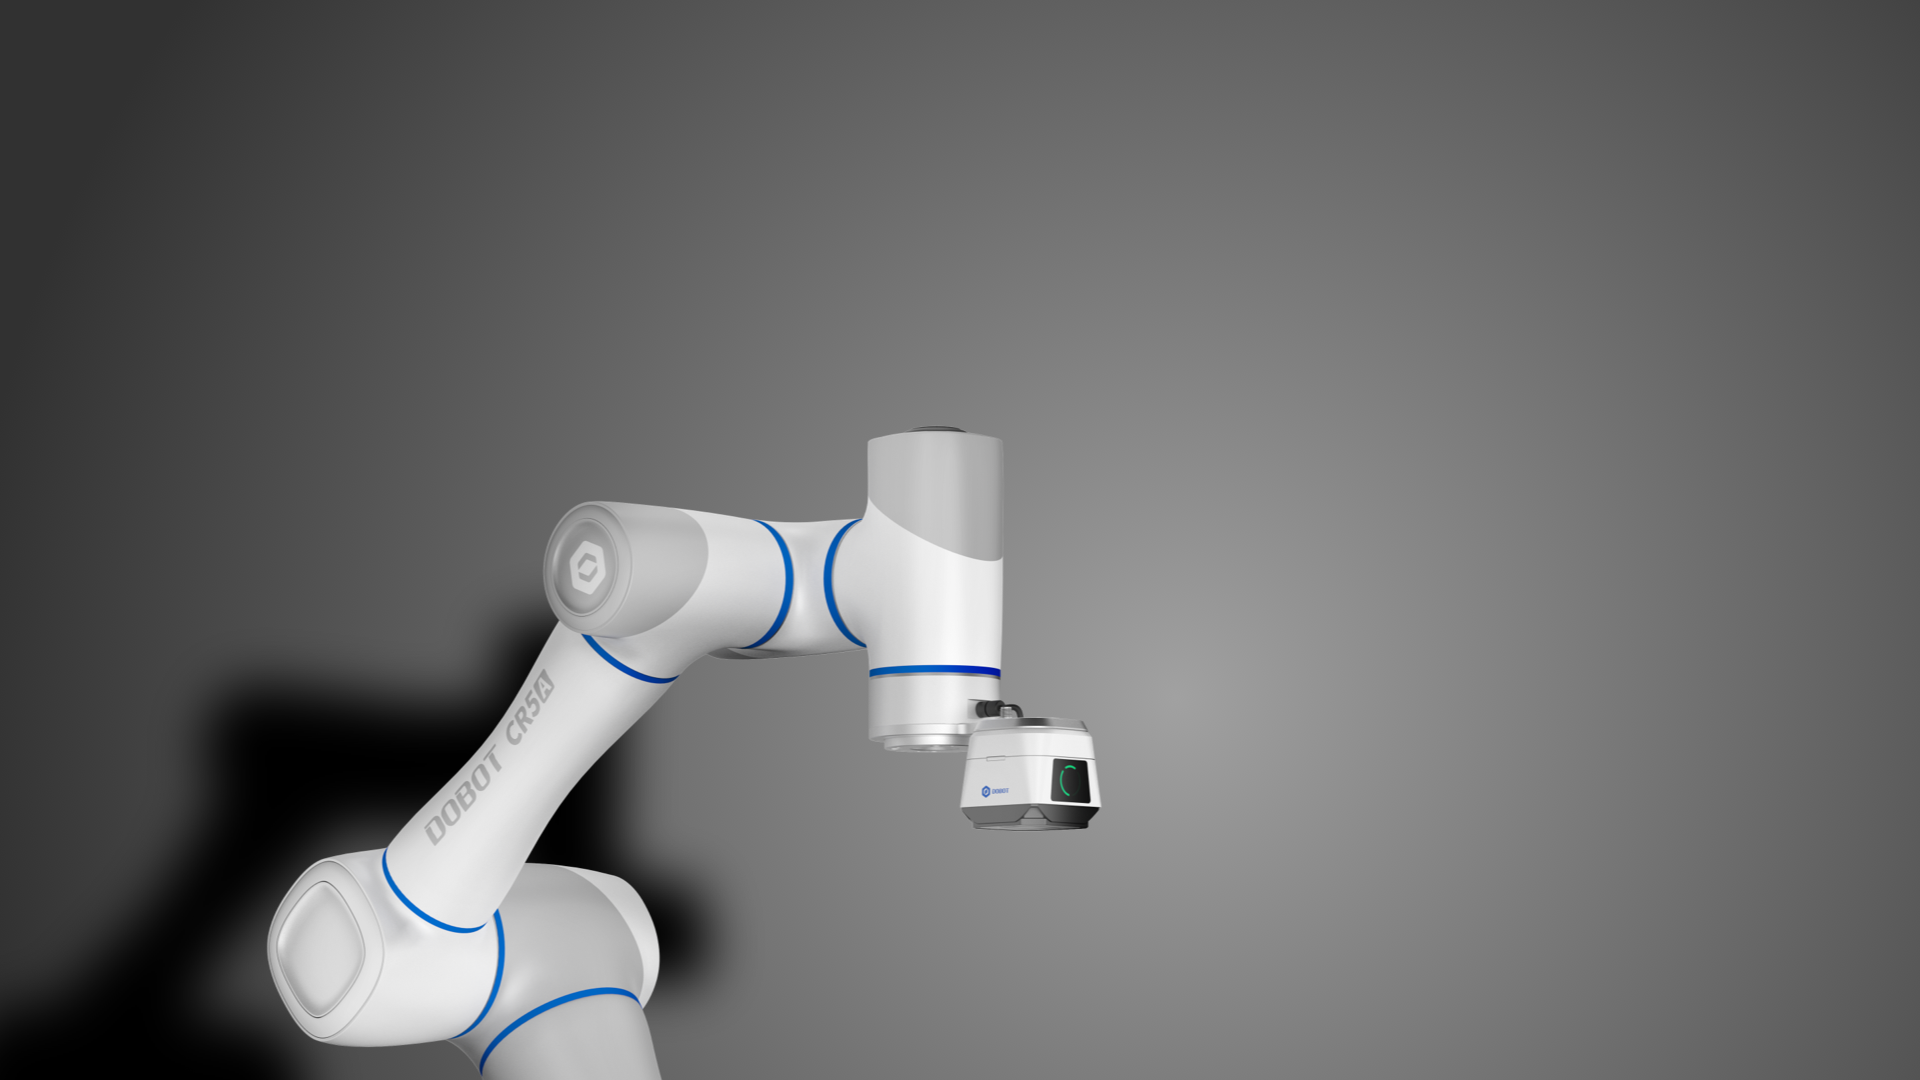 Eine VX500 Smart-Kamera, vereinfacht die Anwendung von kollaborativer Robotervision